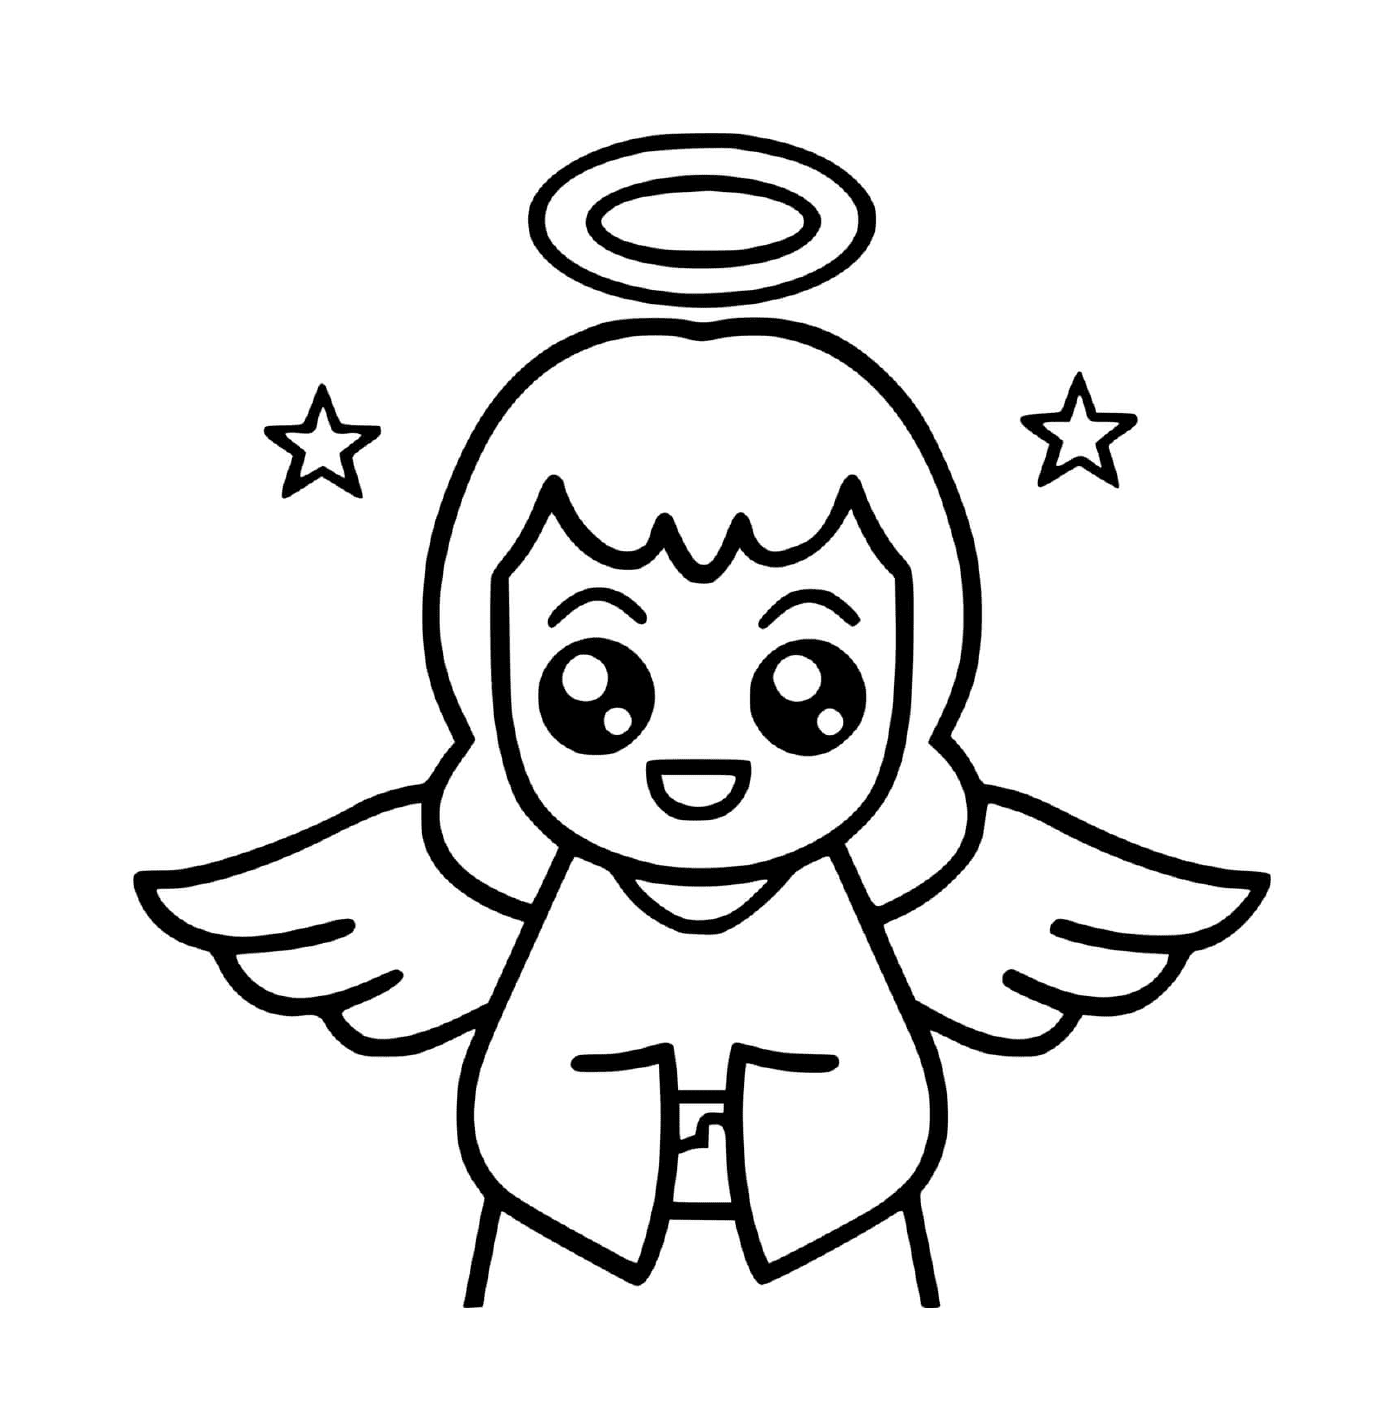   Un ange avec une auréole 